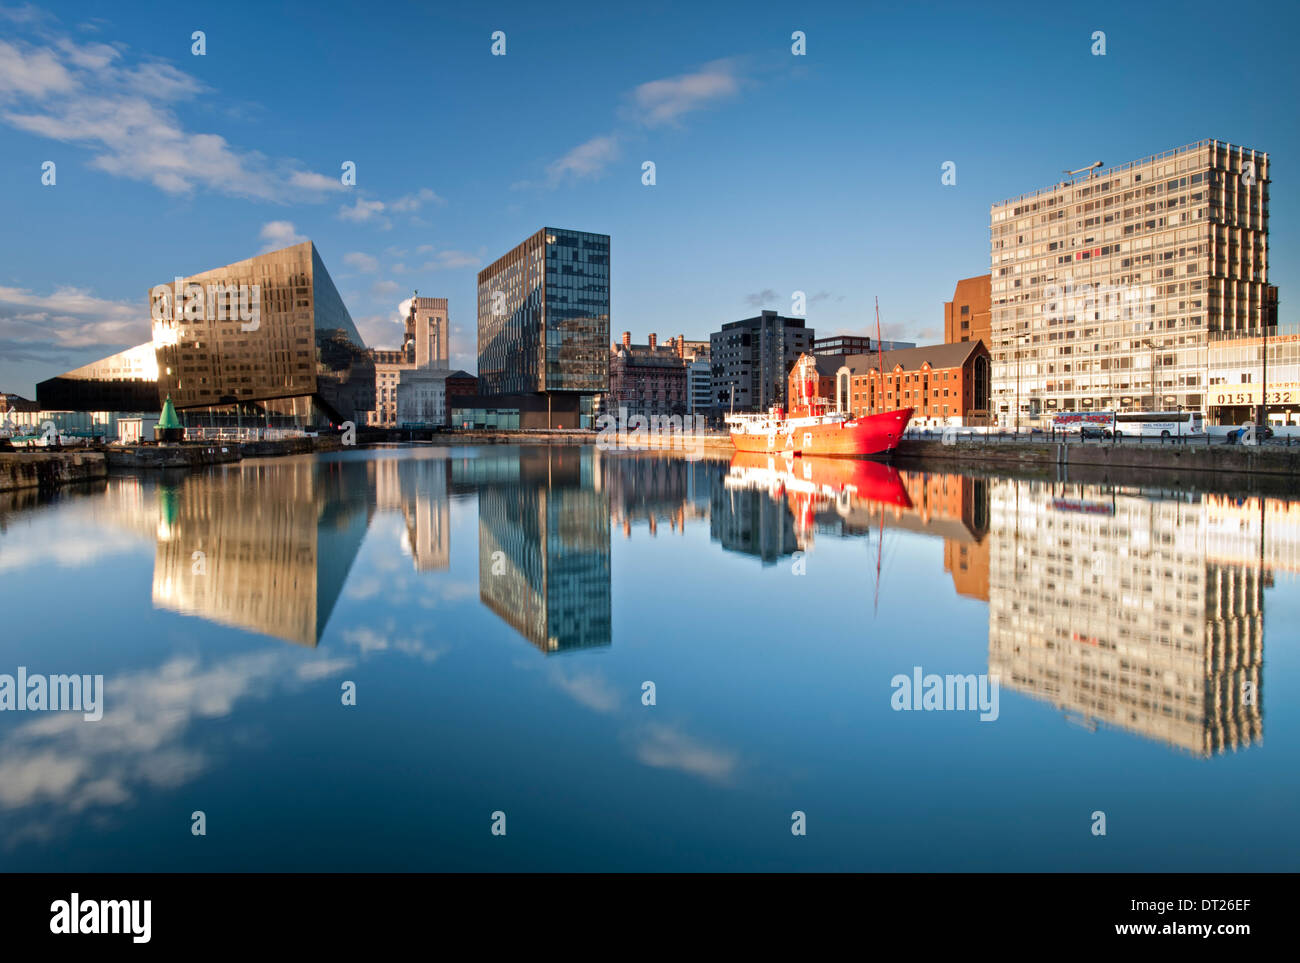 Moderne Wohnungen, der Mersey Bar Feuerschiff & Waterfront Gebäude, Canning Dock, Liverpool, Merseyside, England, UK Stockfoto